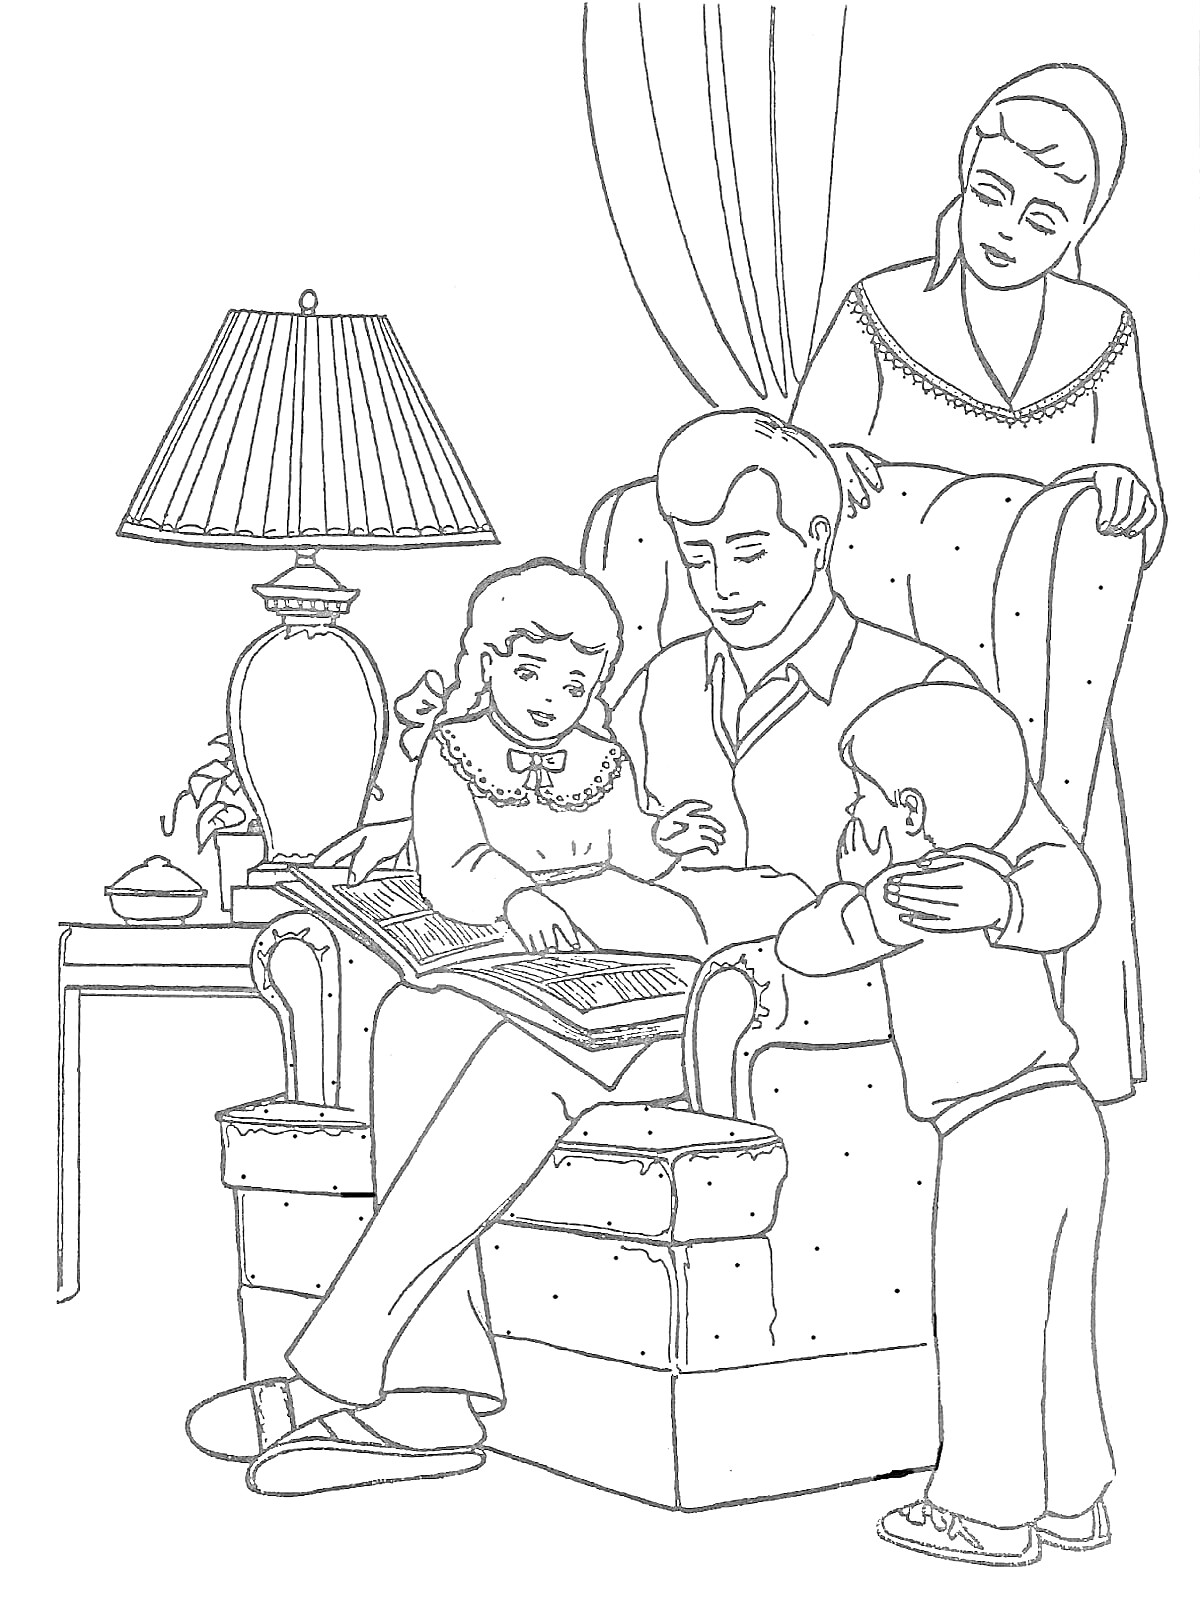 Раскраска Семья, рассматривающая альбом. Папа сидит в кресле с дочерью на коленях, рядом сын и мама.